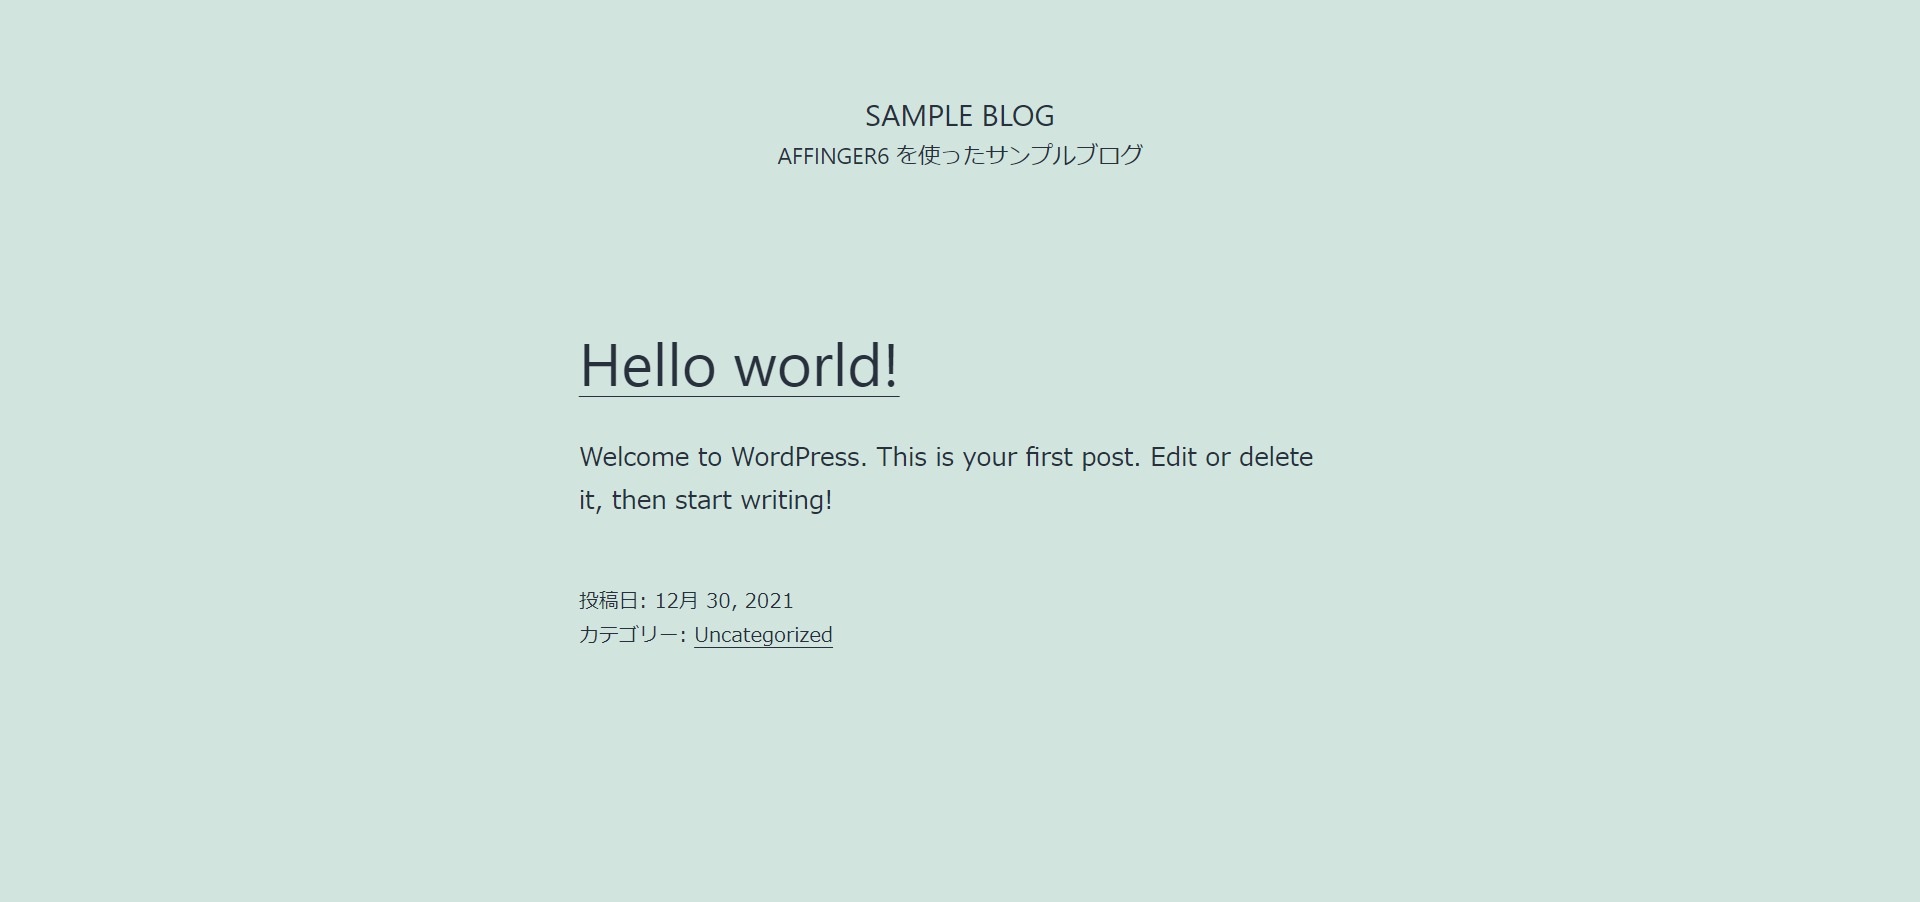 作成したドメインに「Hello world！」と書かれたページが表示されるはずです